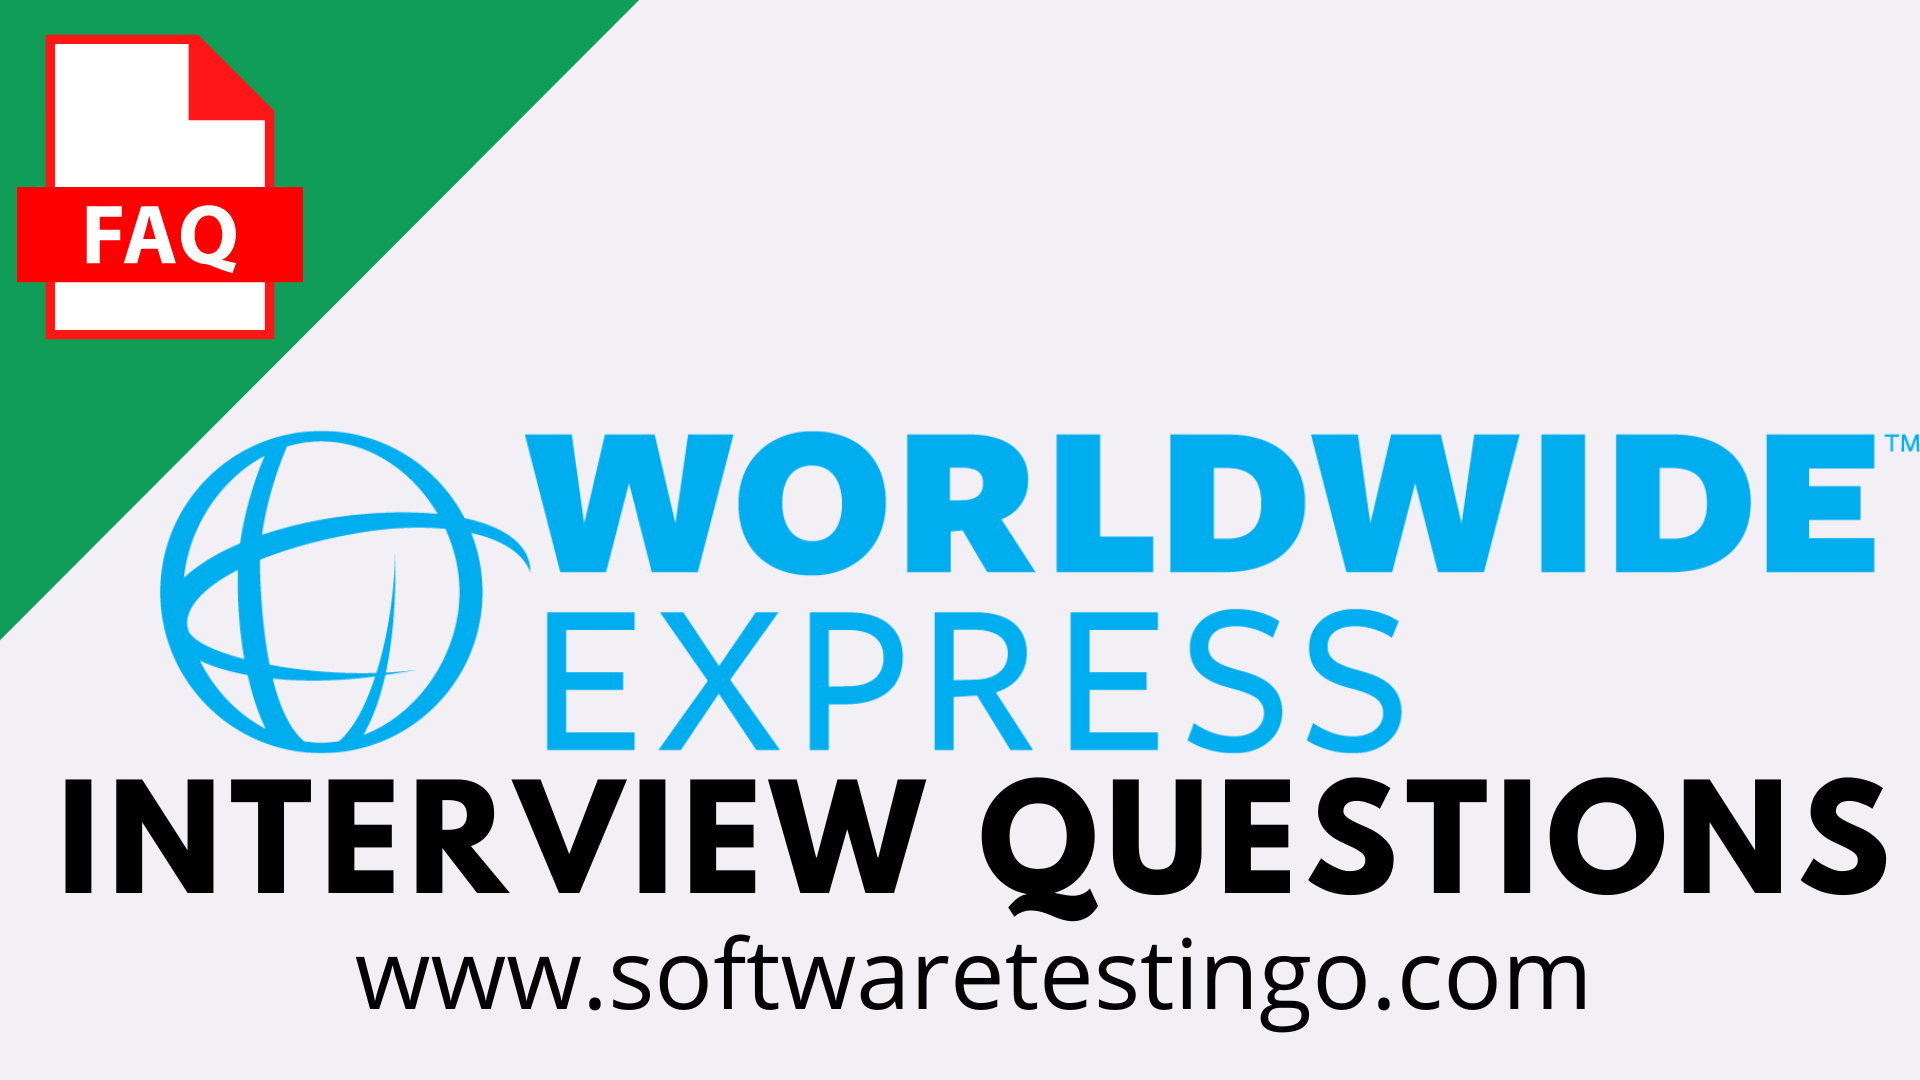 Worldwide Express Interview Questions